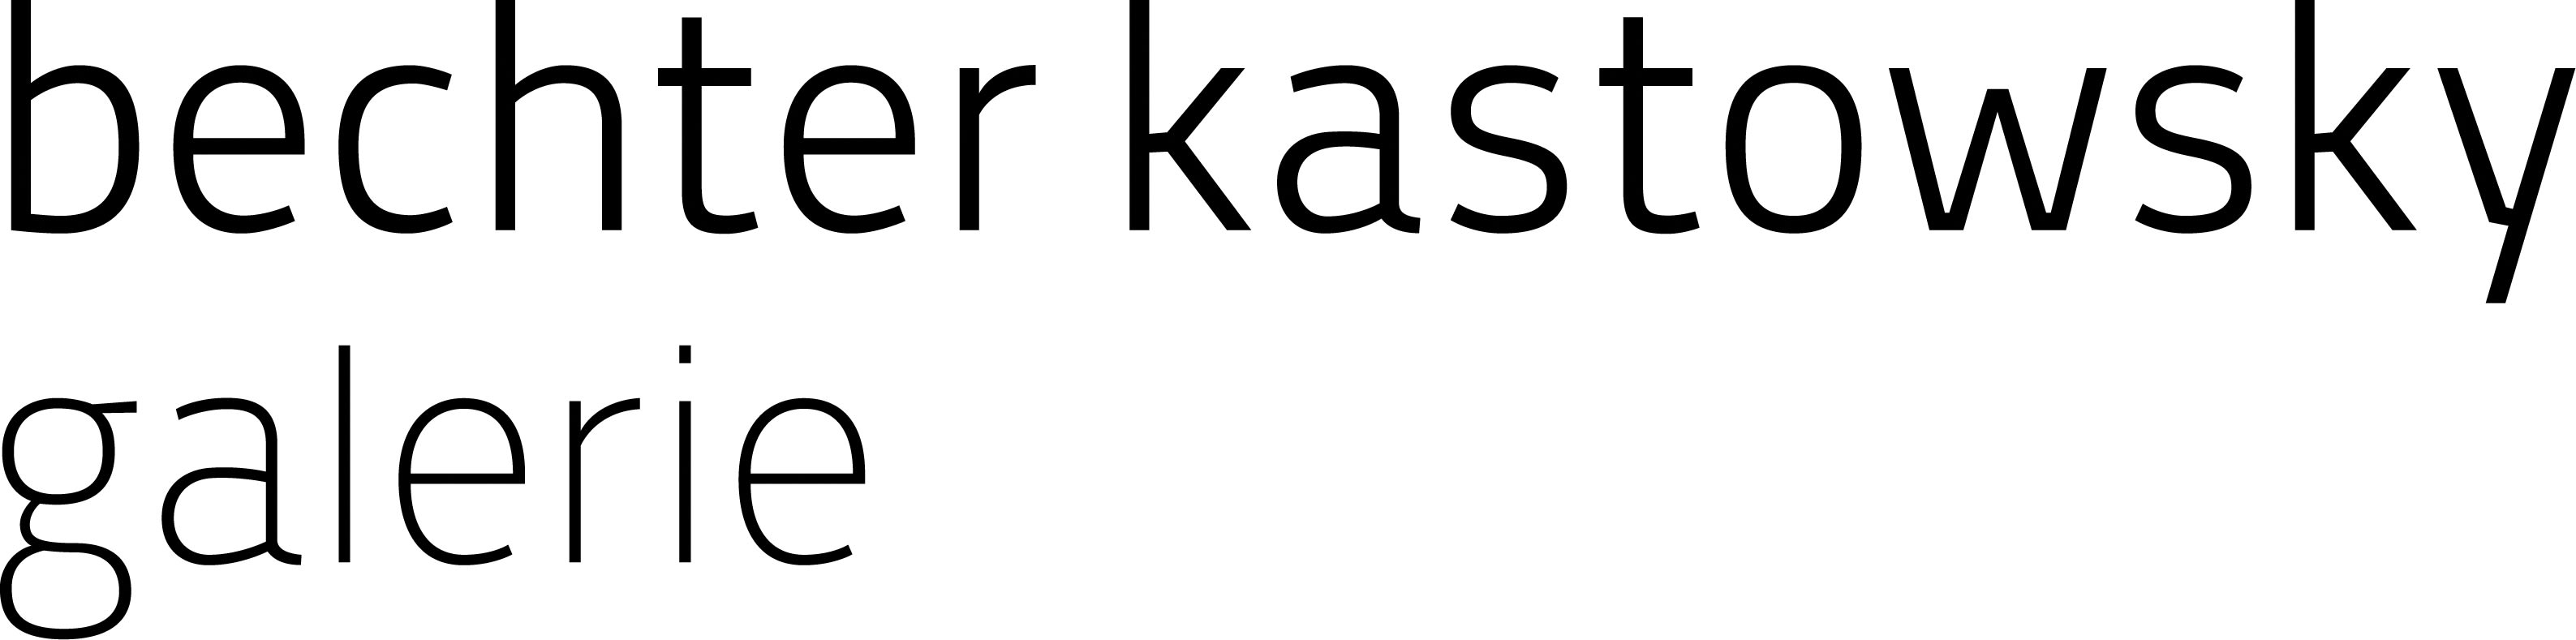 Bechter Kastowsky Gallery company logo